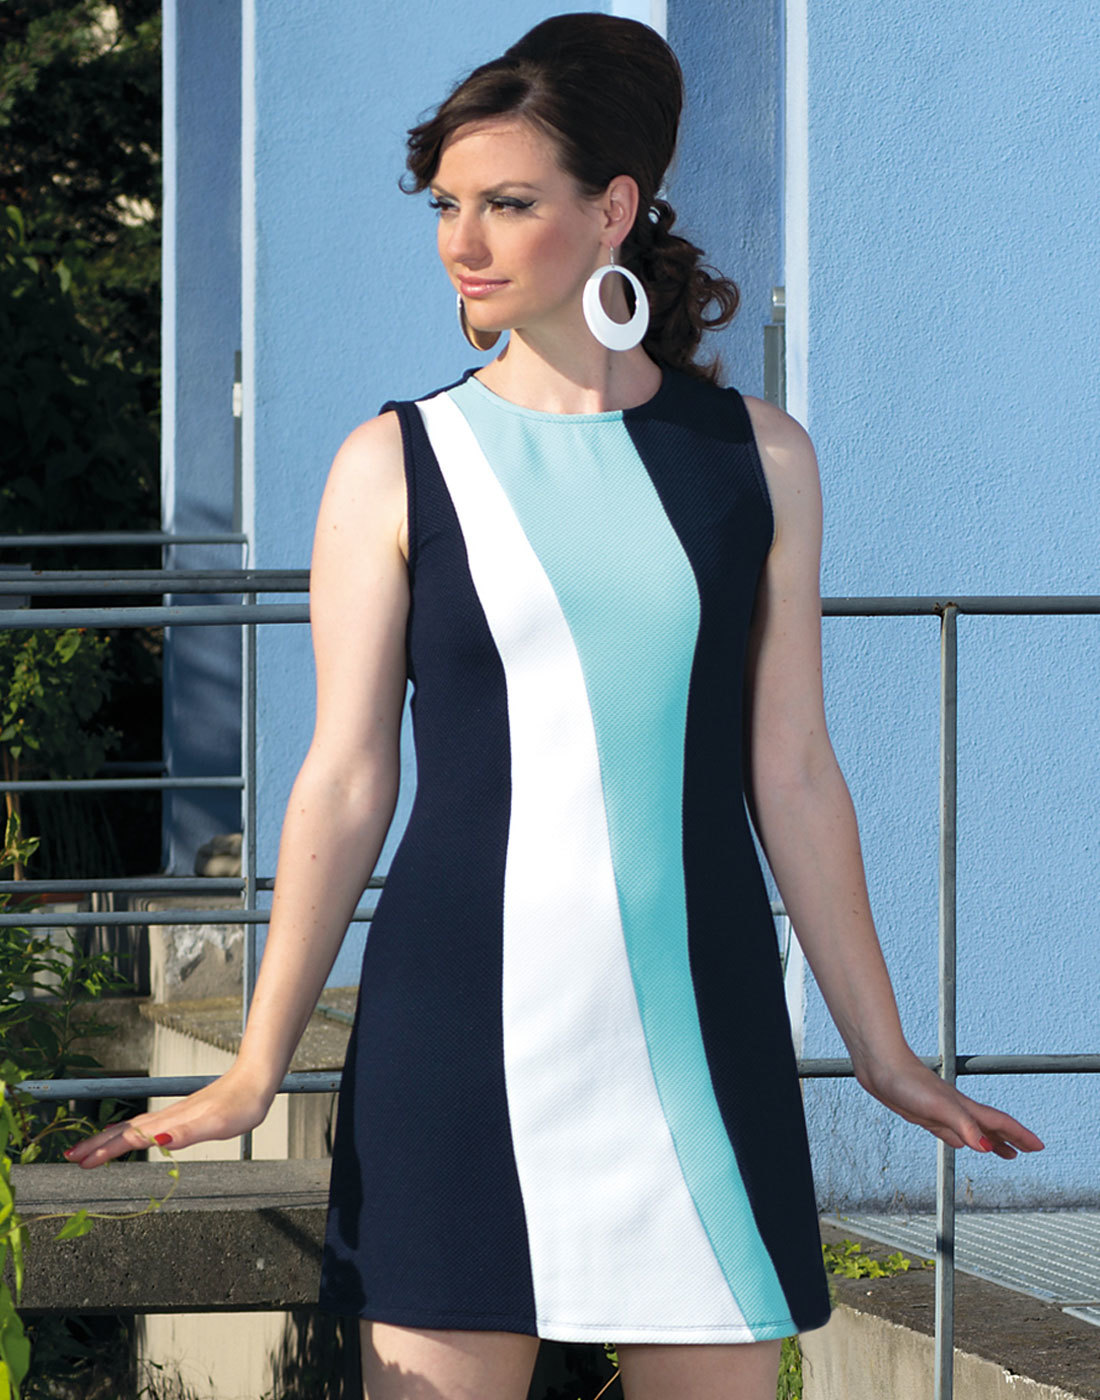 Tilda MADEMOISELLE YEYE 60s Mod Panel A-Line Dress